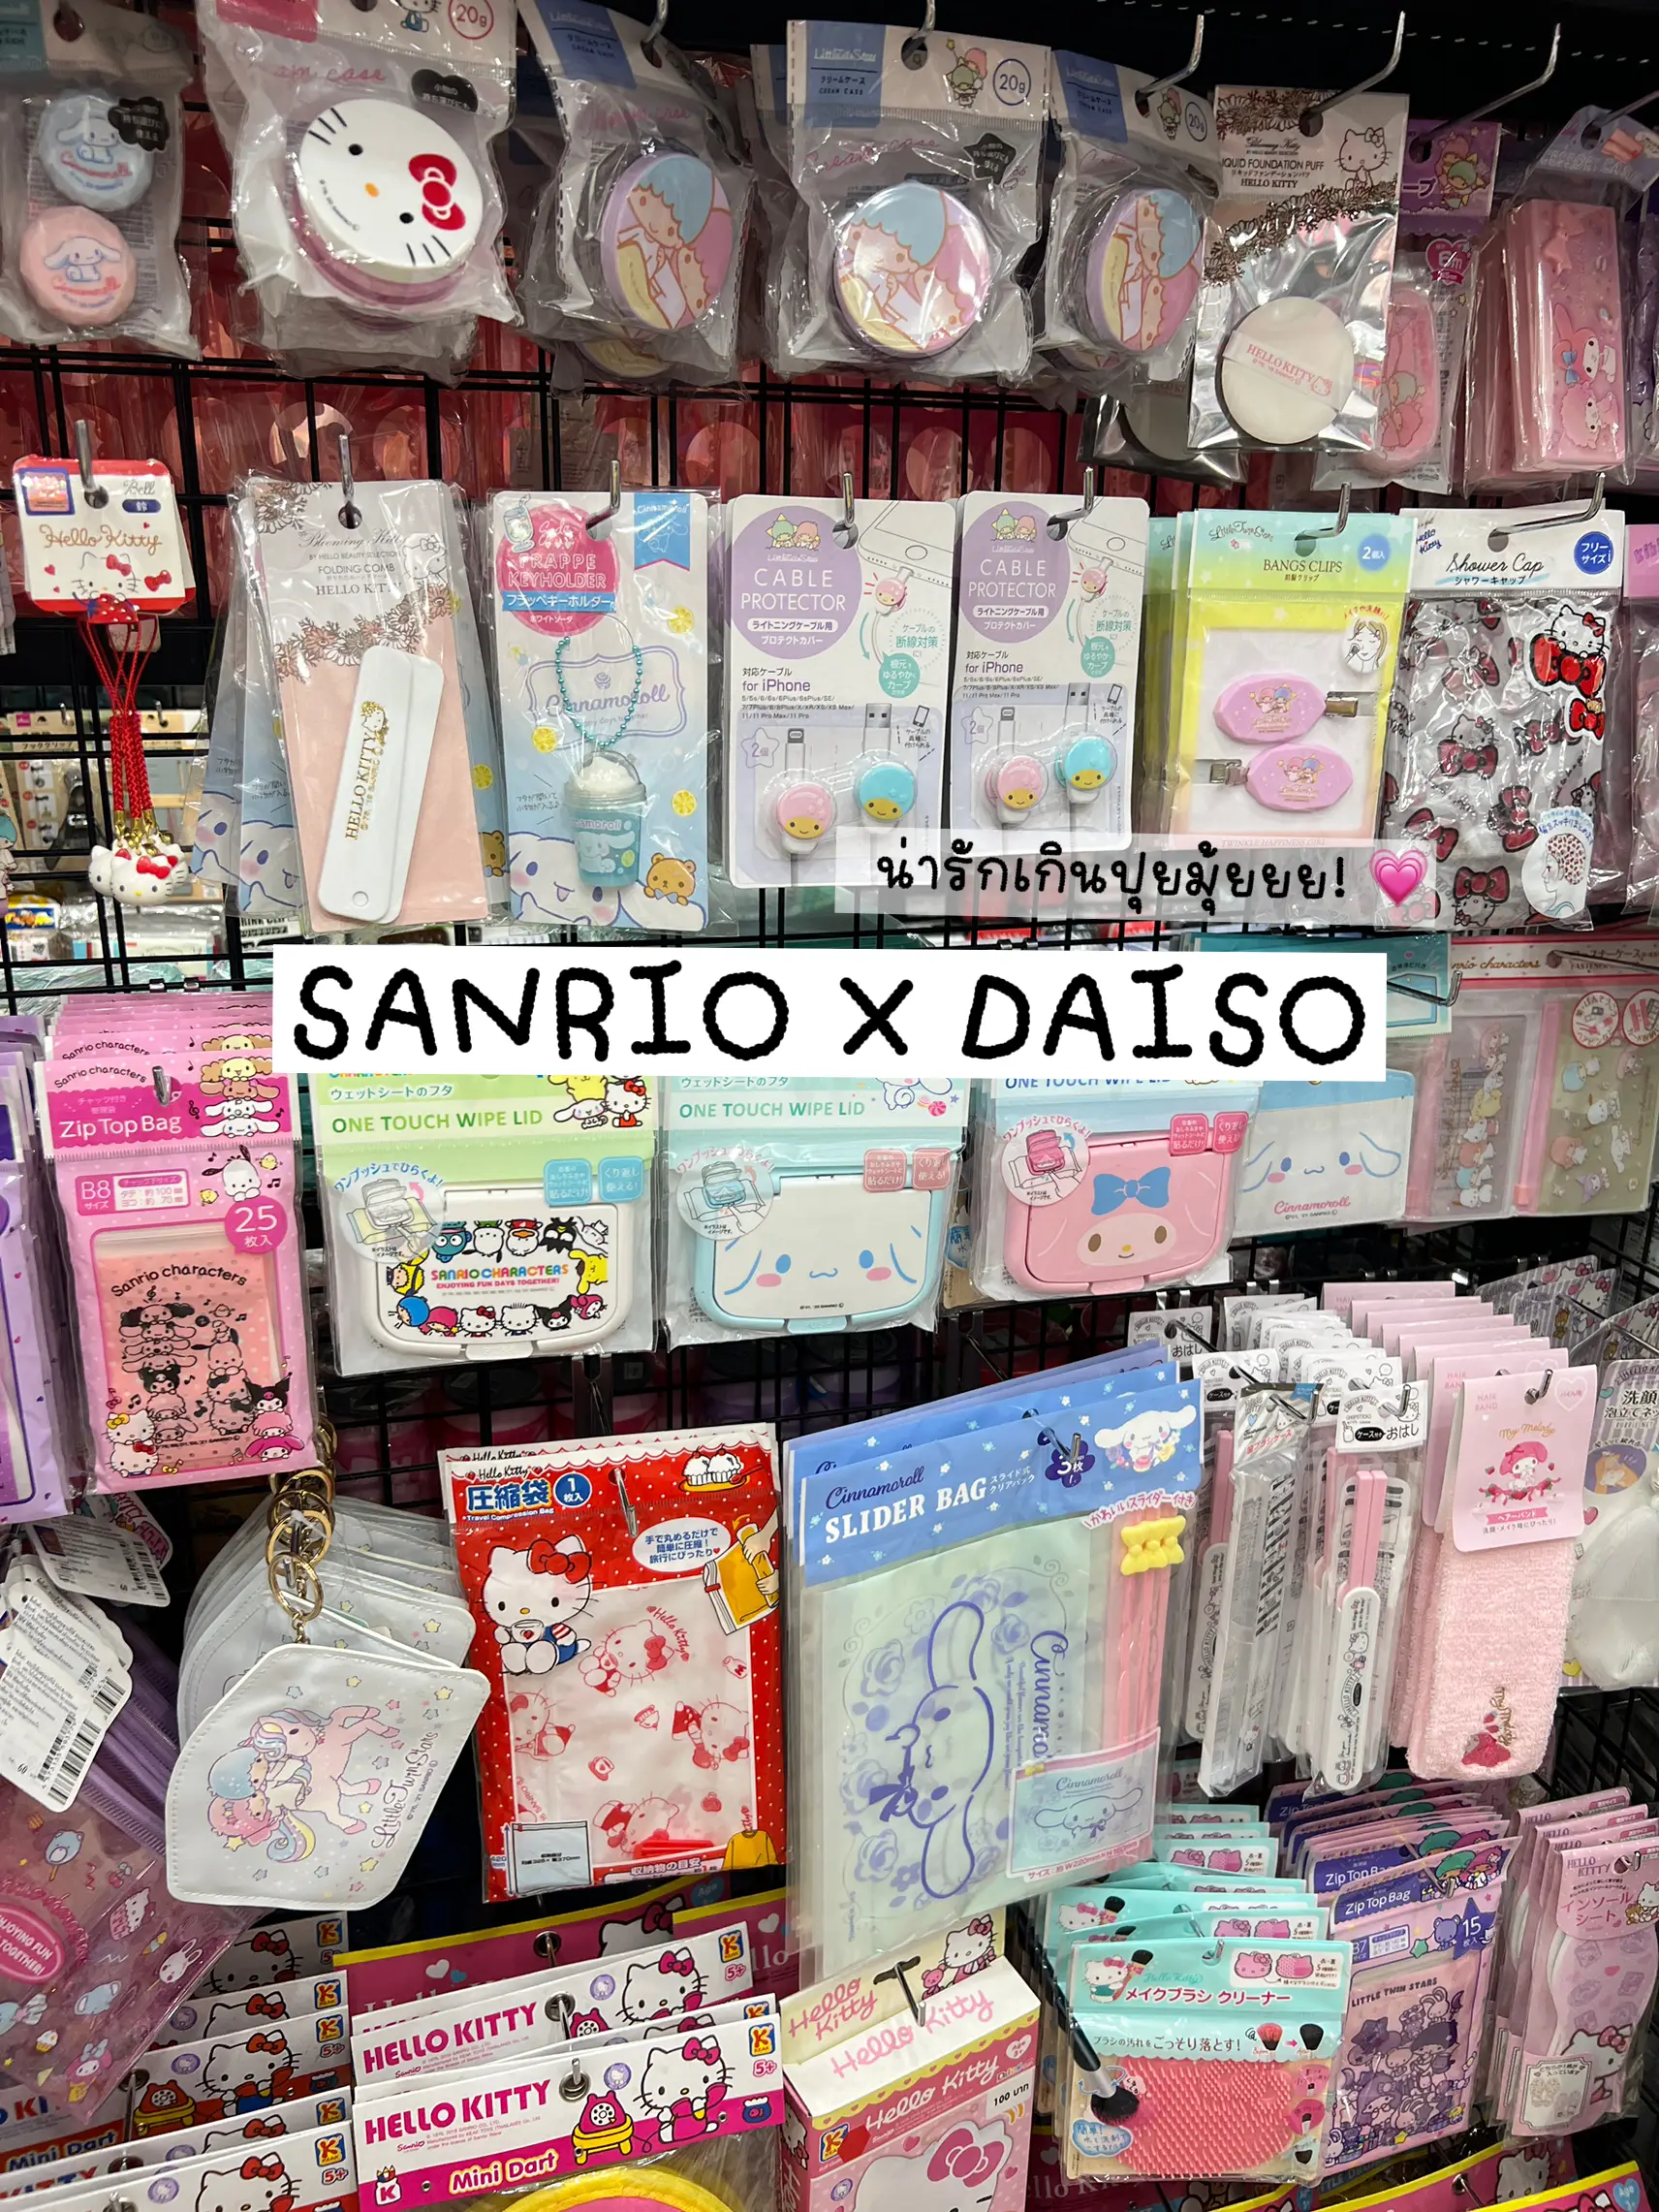 a fully stocked daiso >>> #daiso #sanrio